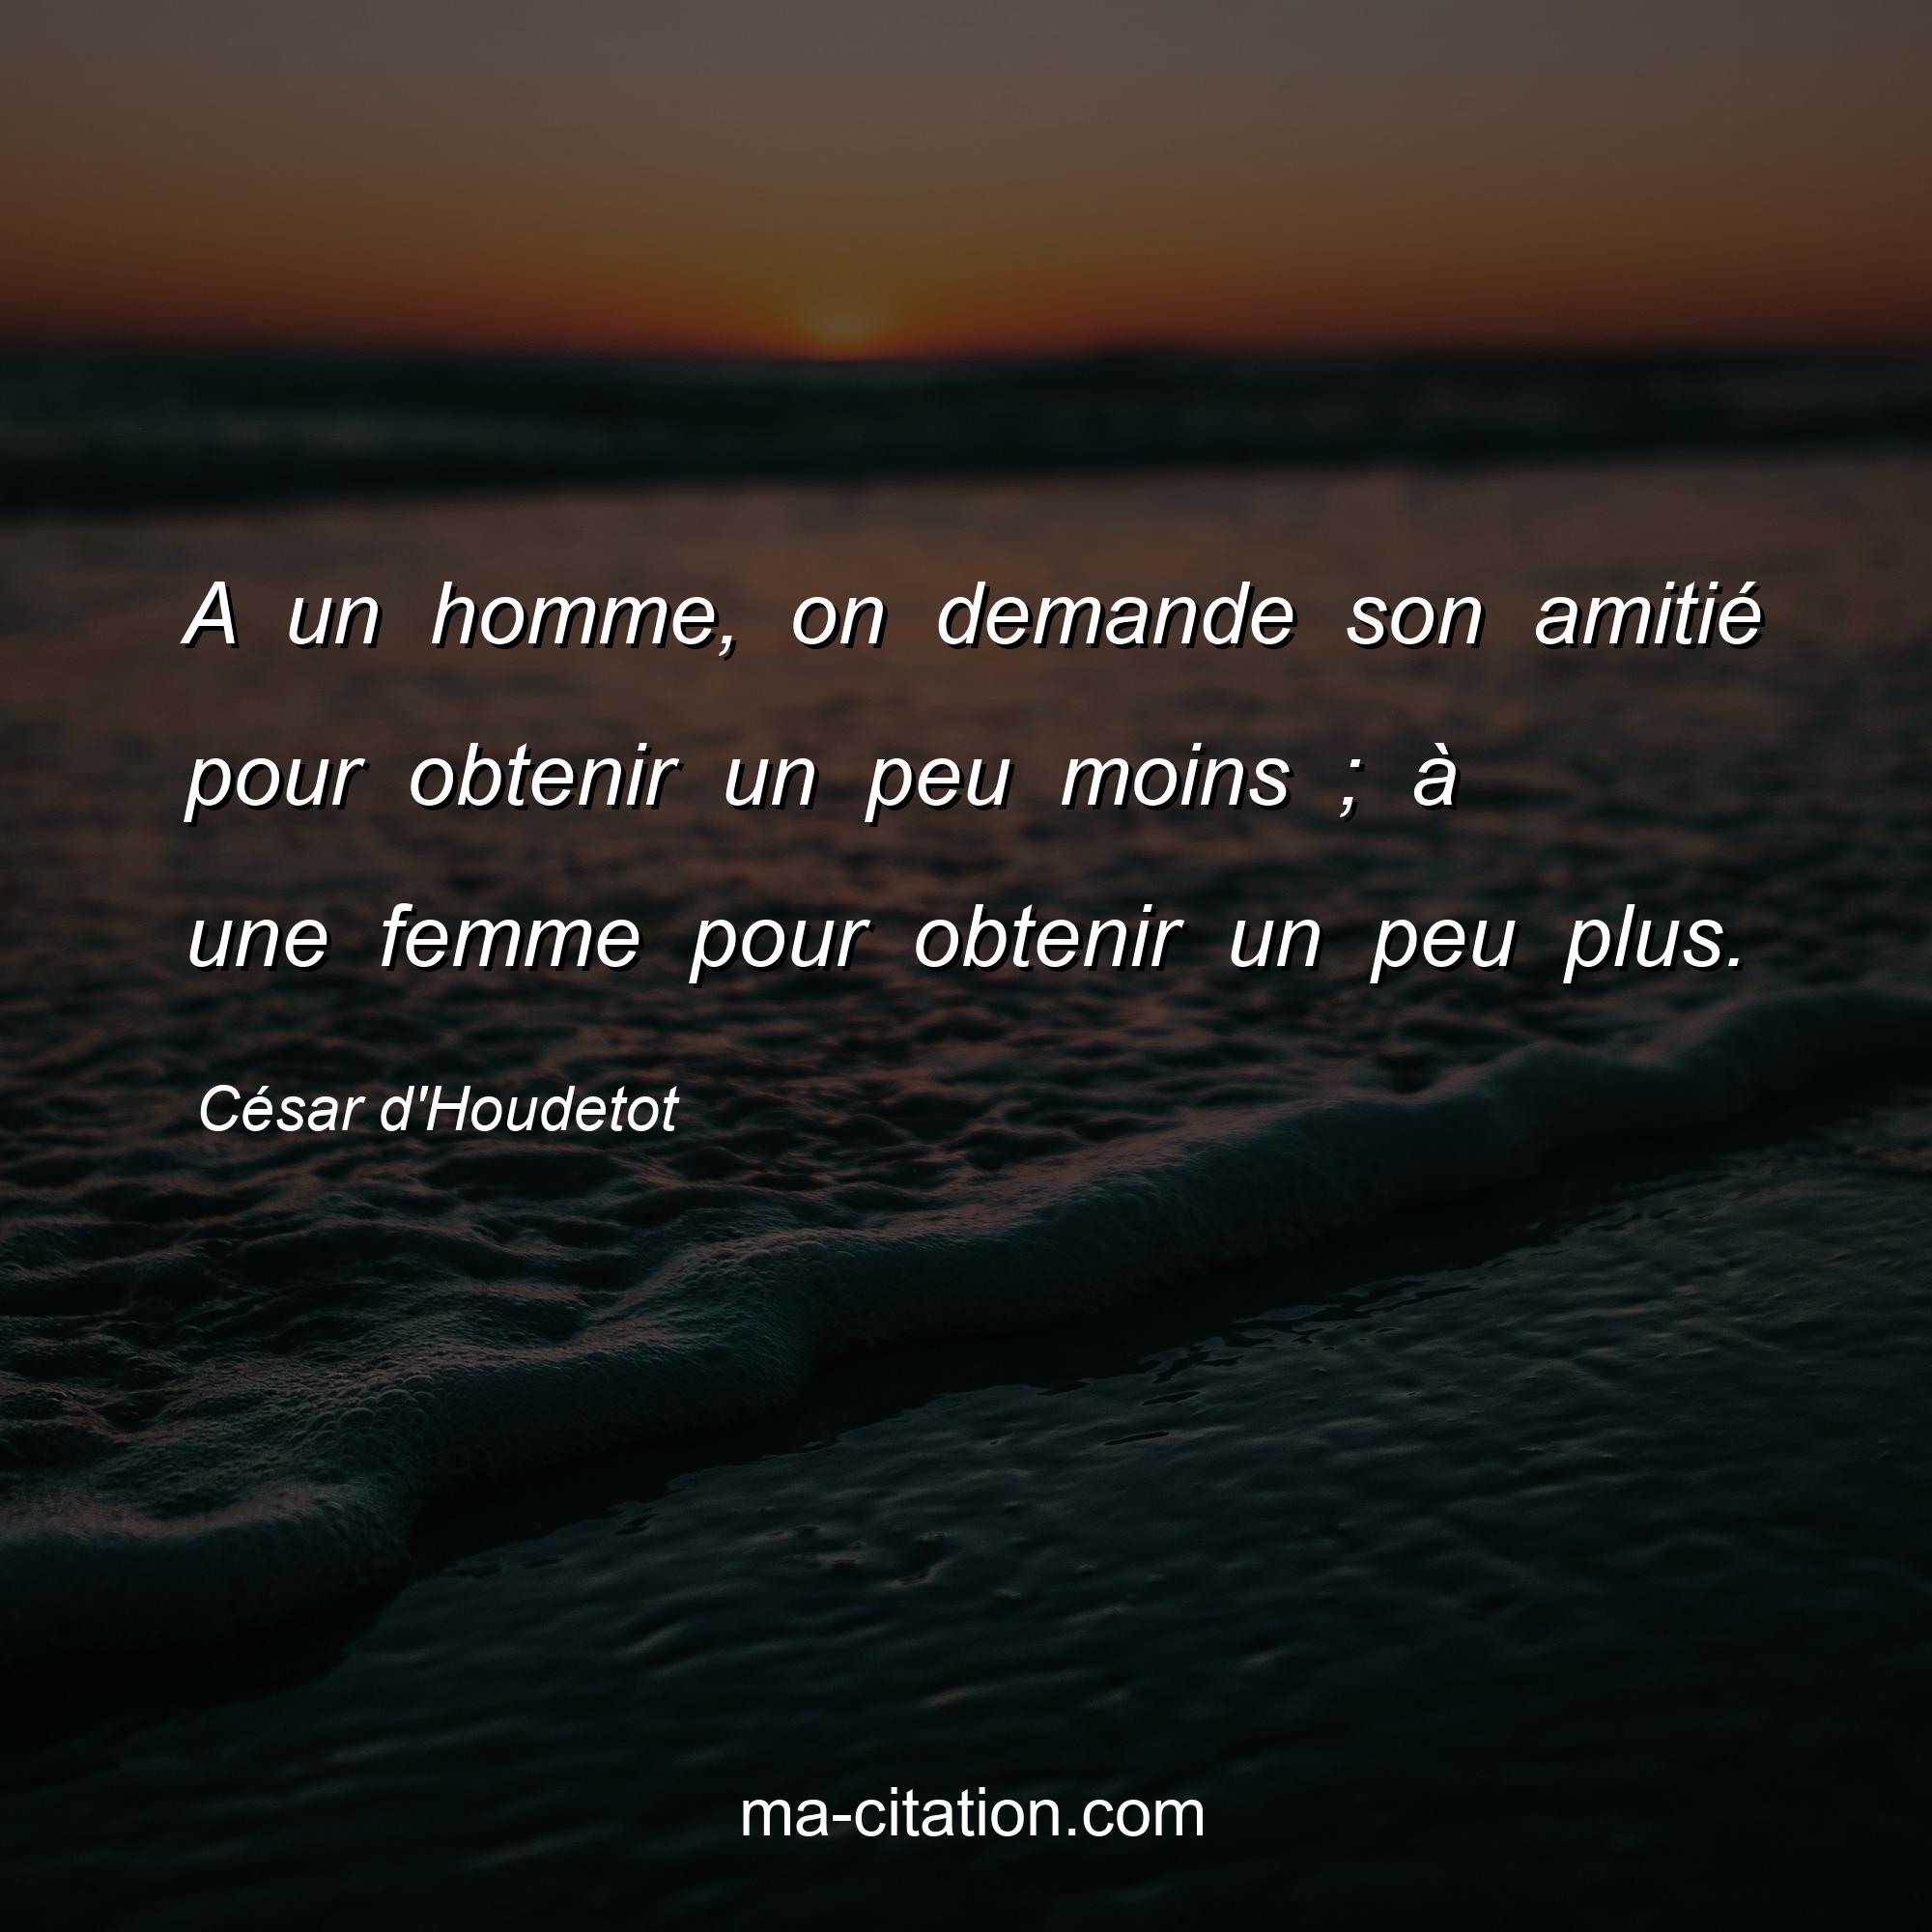 César d'Houdetot : A un homme, on demande son amitié pour obtenir un peu moins ; à une femme pour obtenir un peu plus.